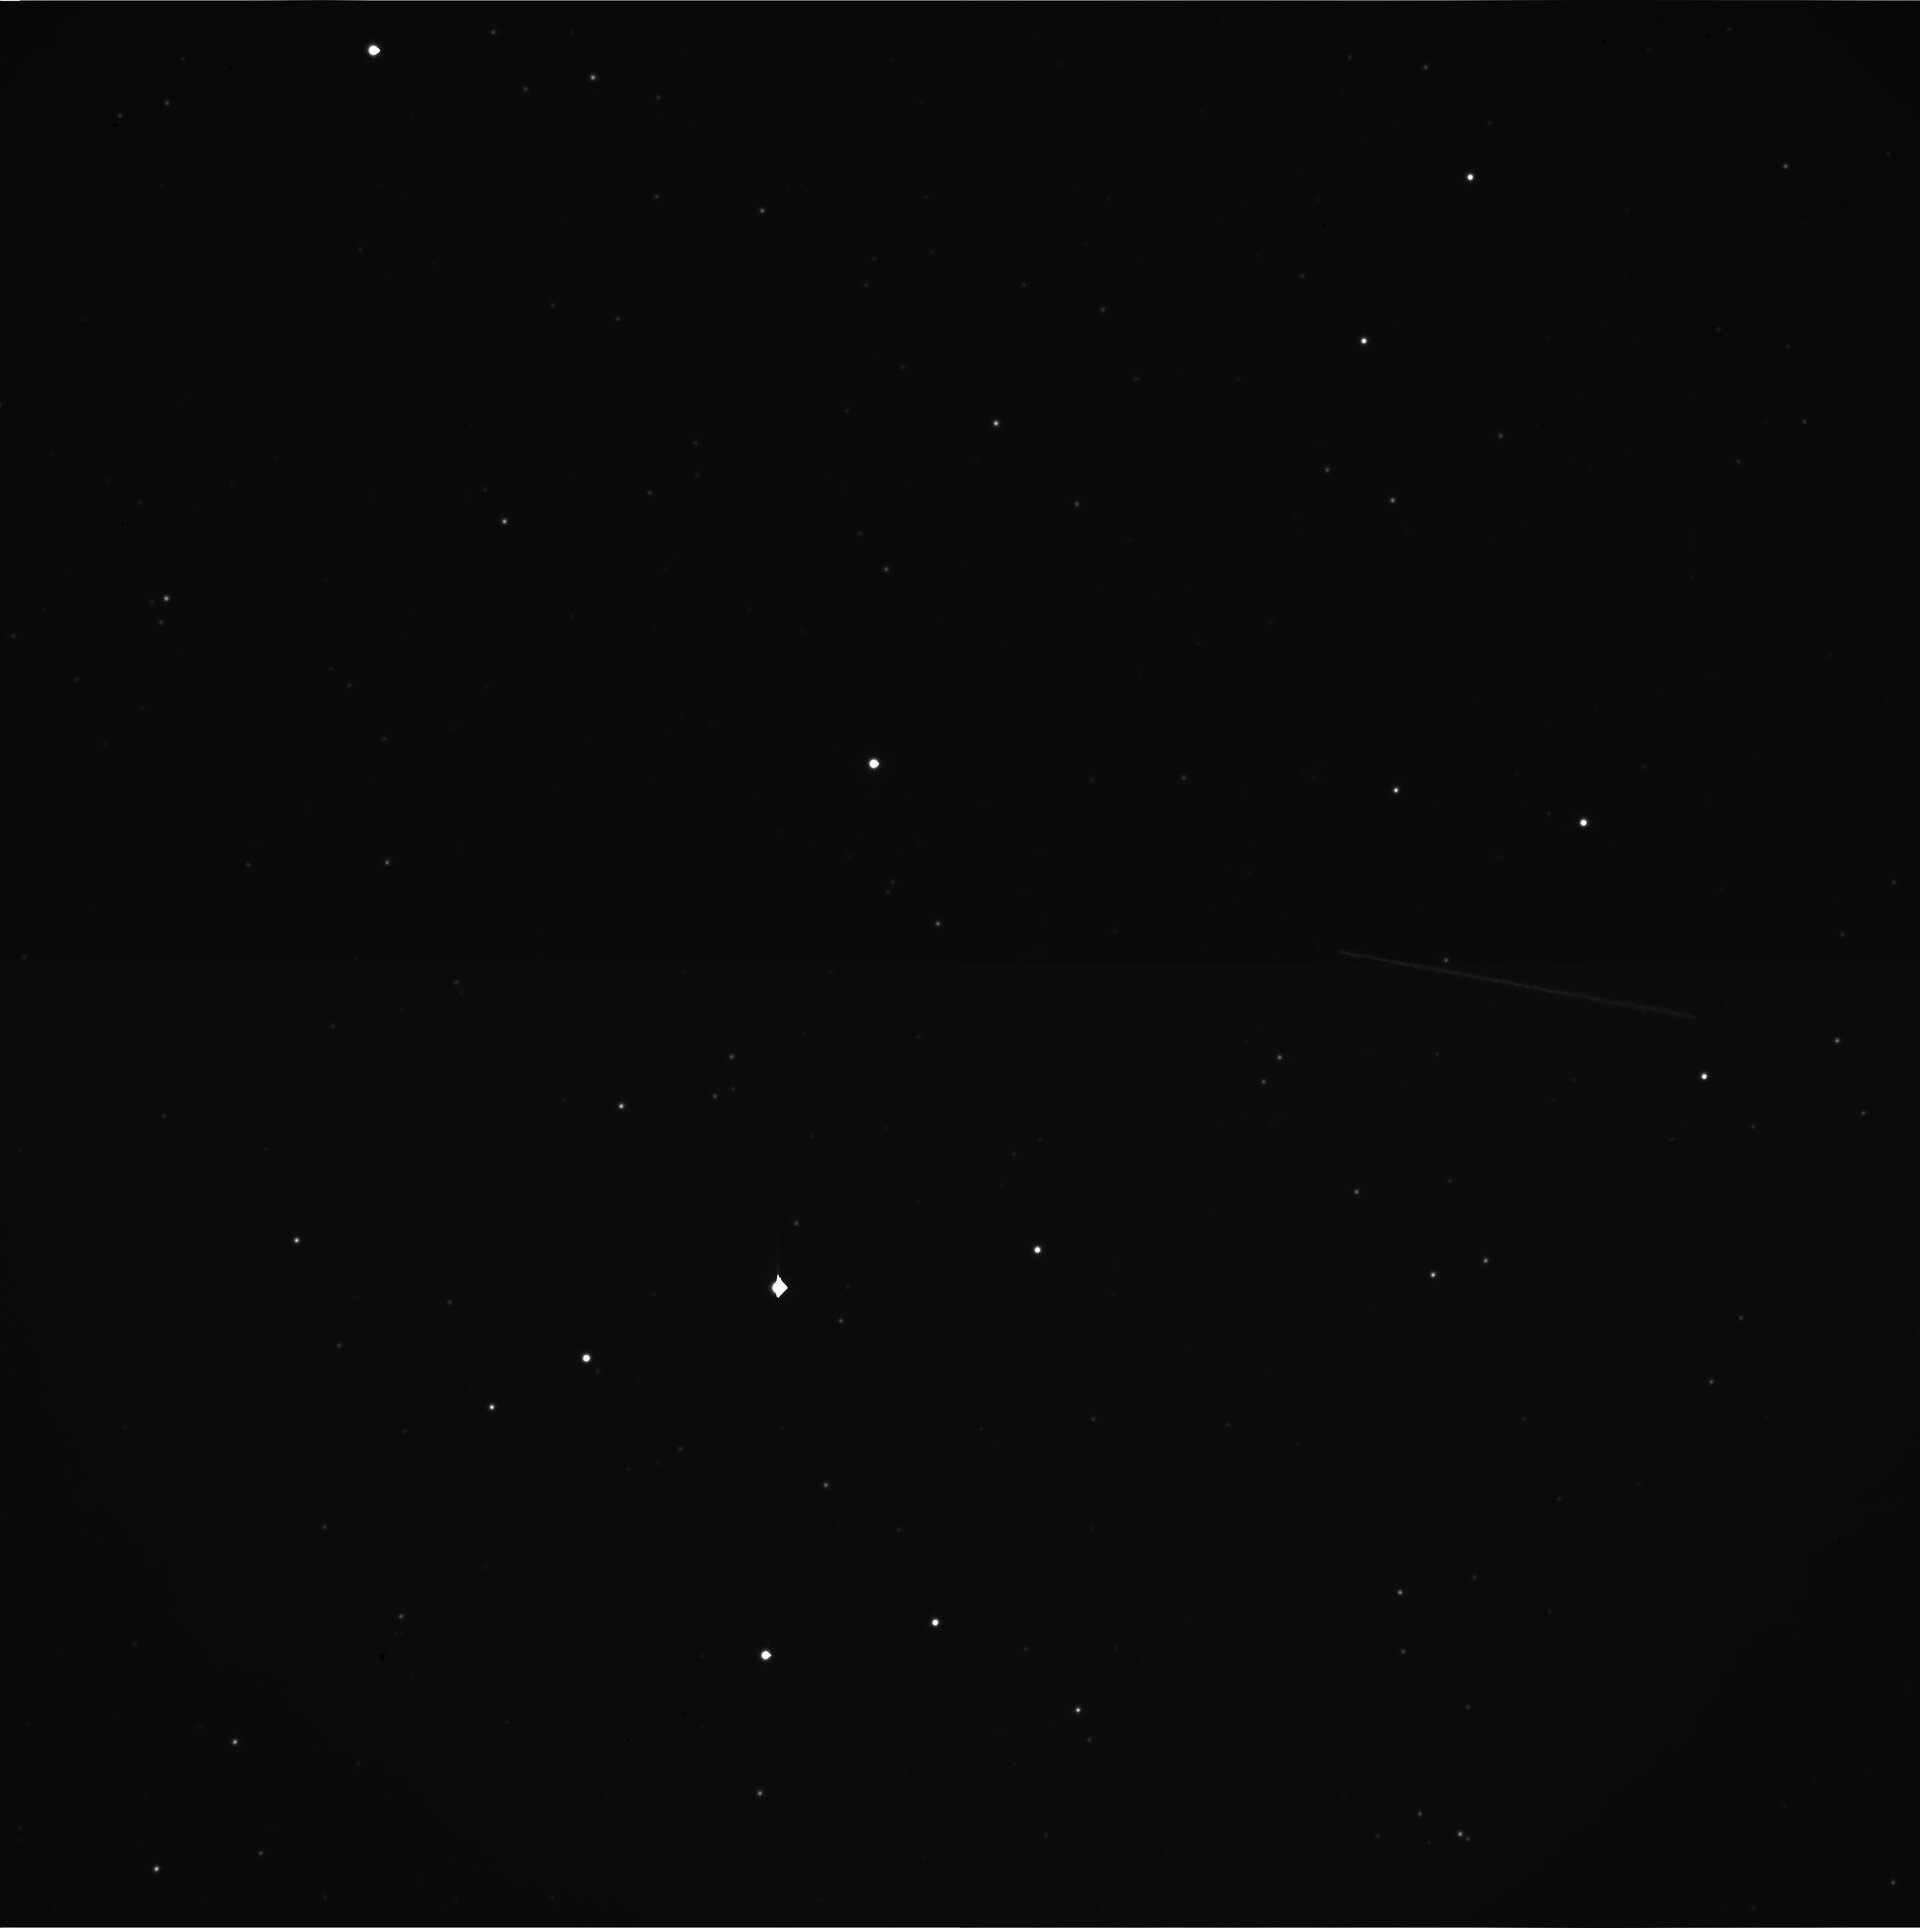 Asteroid 2012DA14 captured